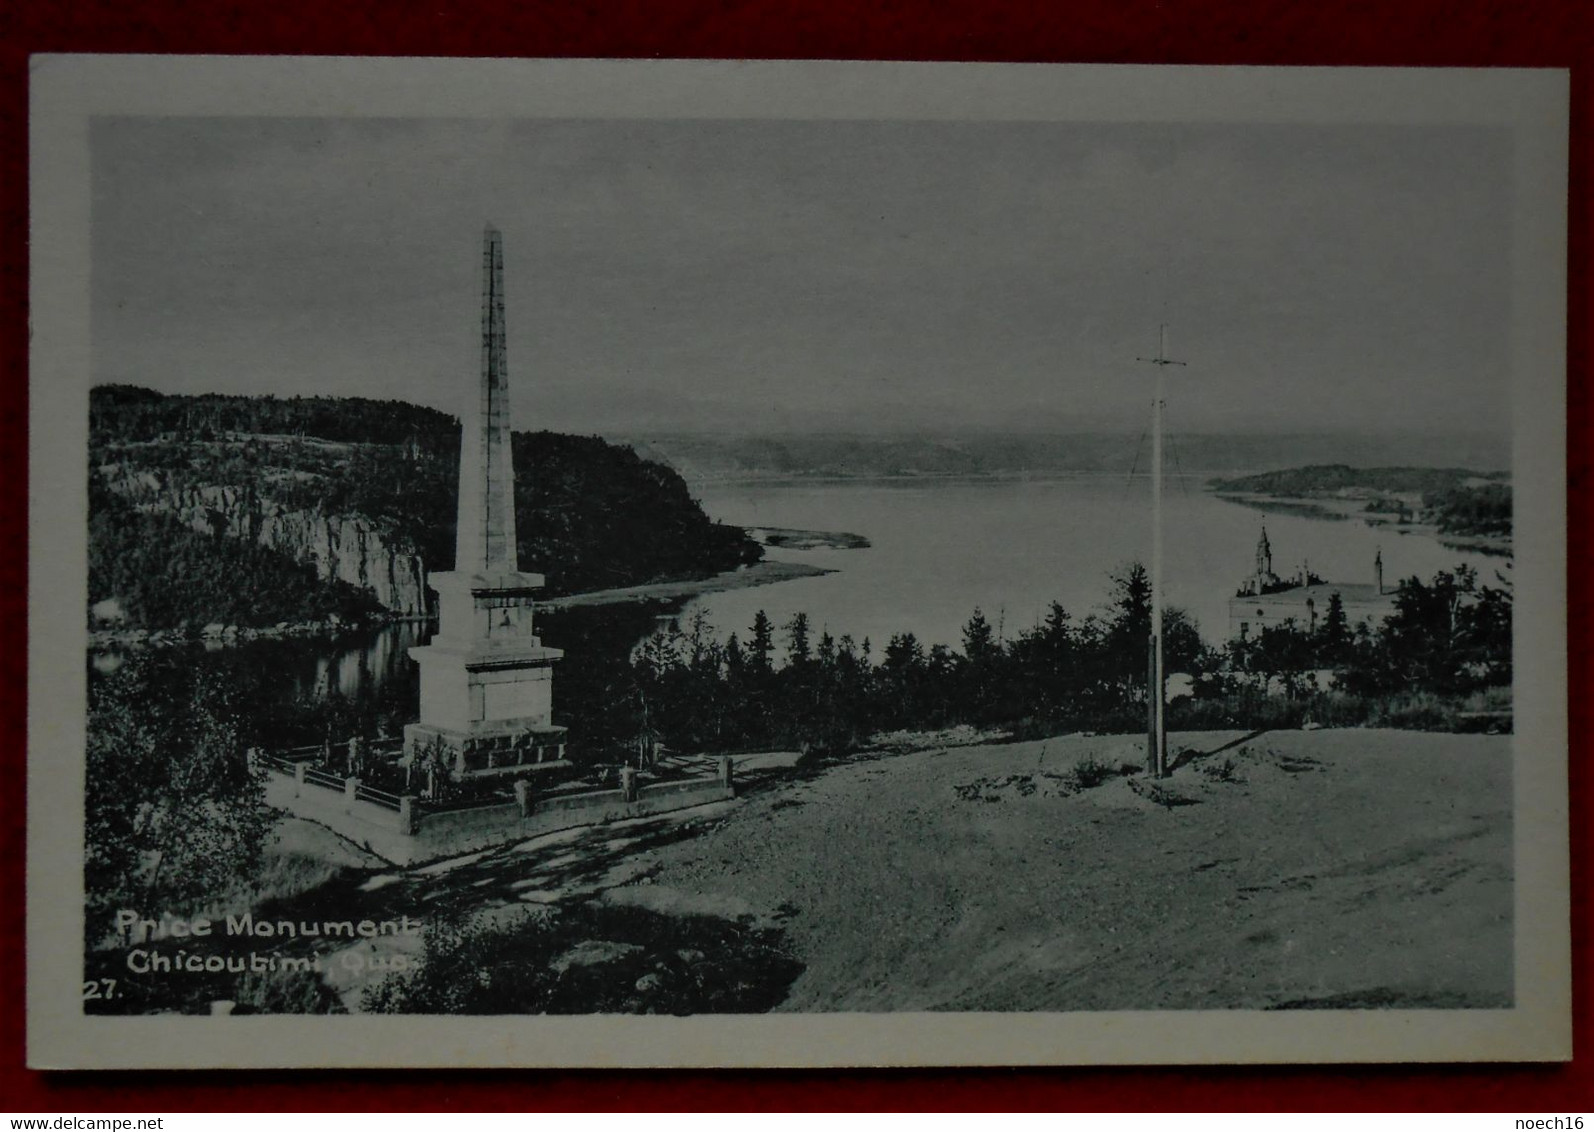 Old Postcard - Canada Chicoutimi - Price Monument - Chicoutimi